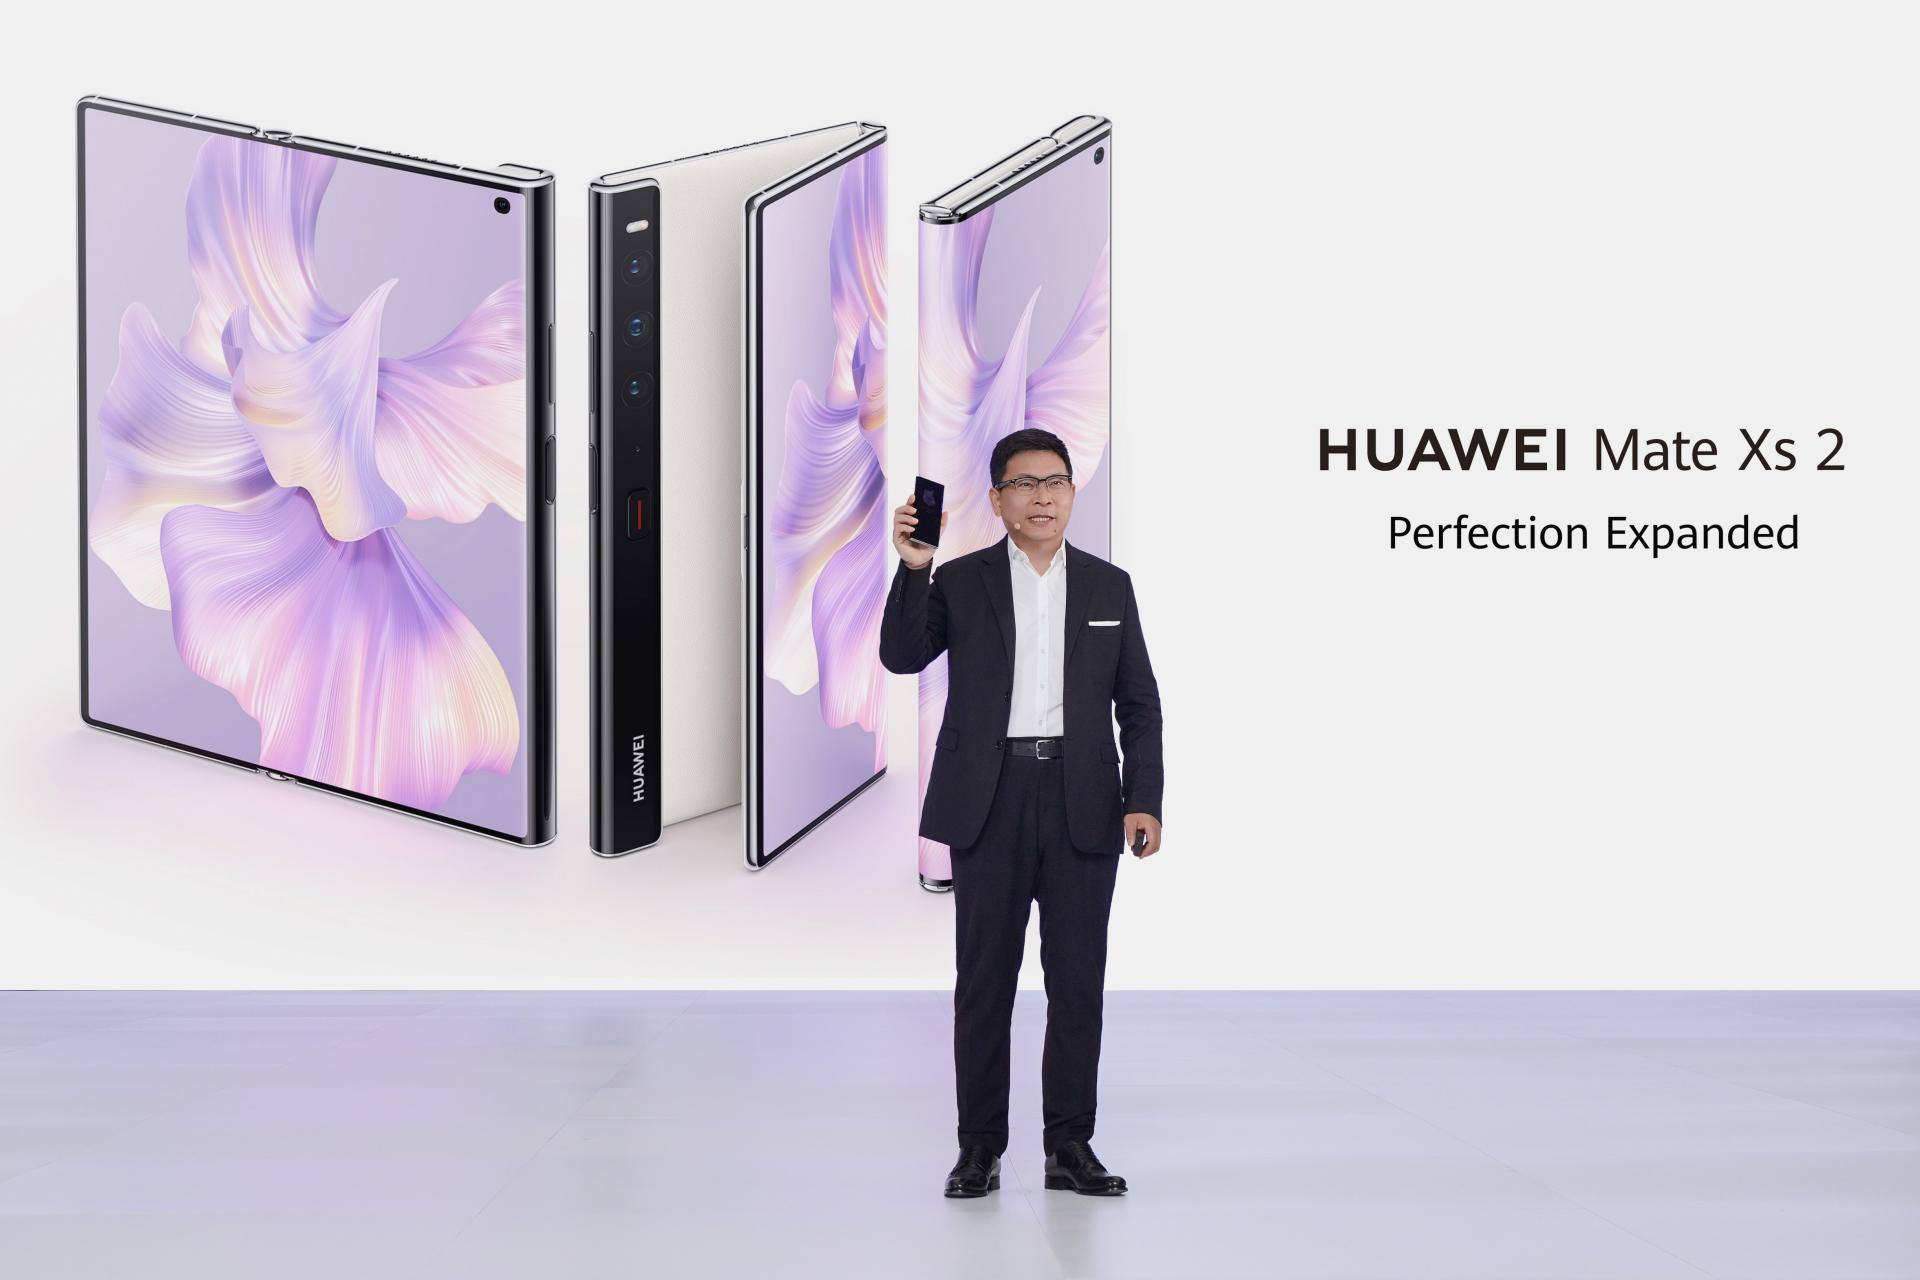 Компания Huawei представляет новые продукты для комфортного и здорового образа жизни